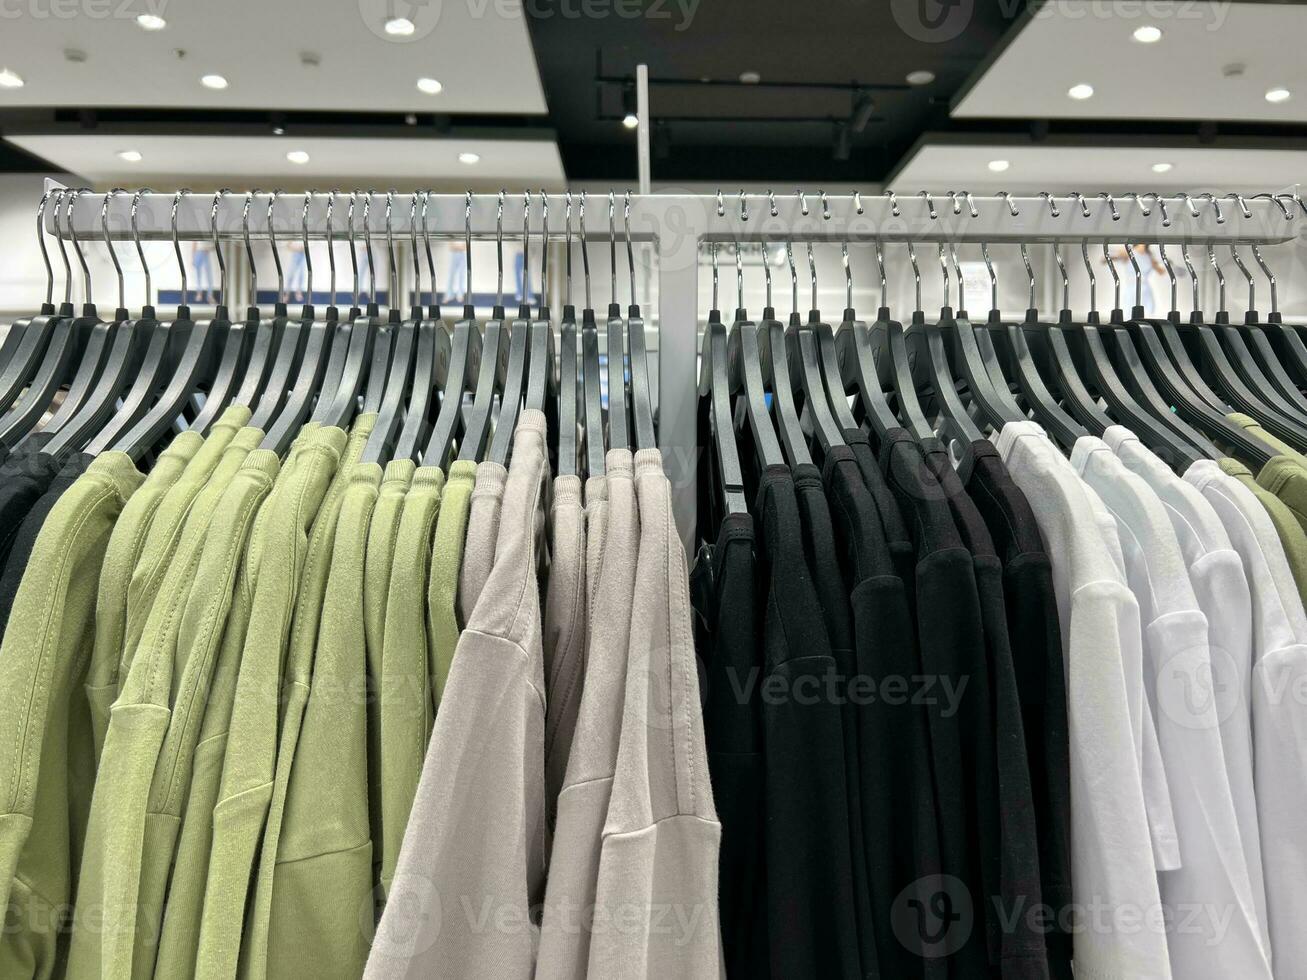 vêtements sur cintres dans le magasin. grand assortiment de achats mode. un image de une garde-robe. photo